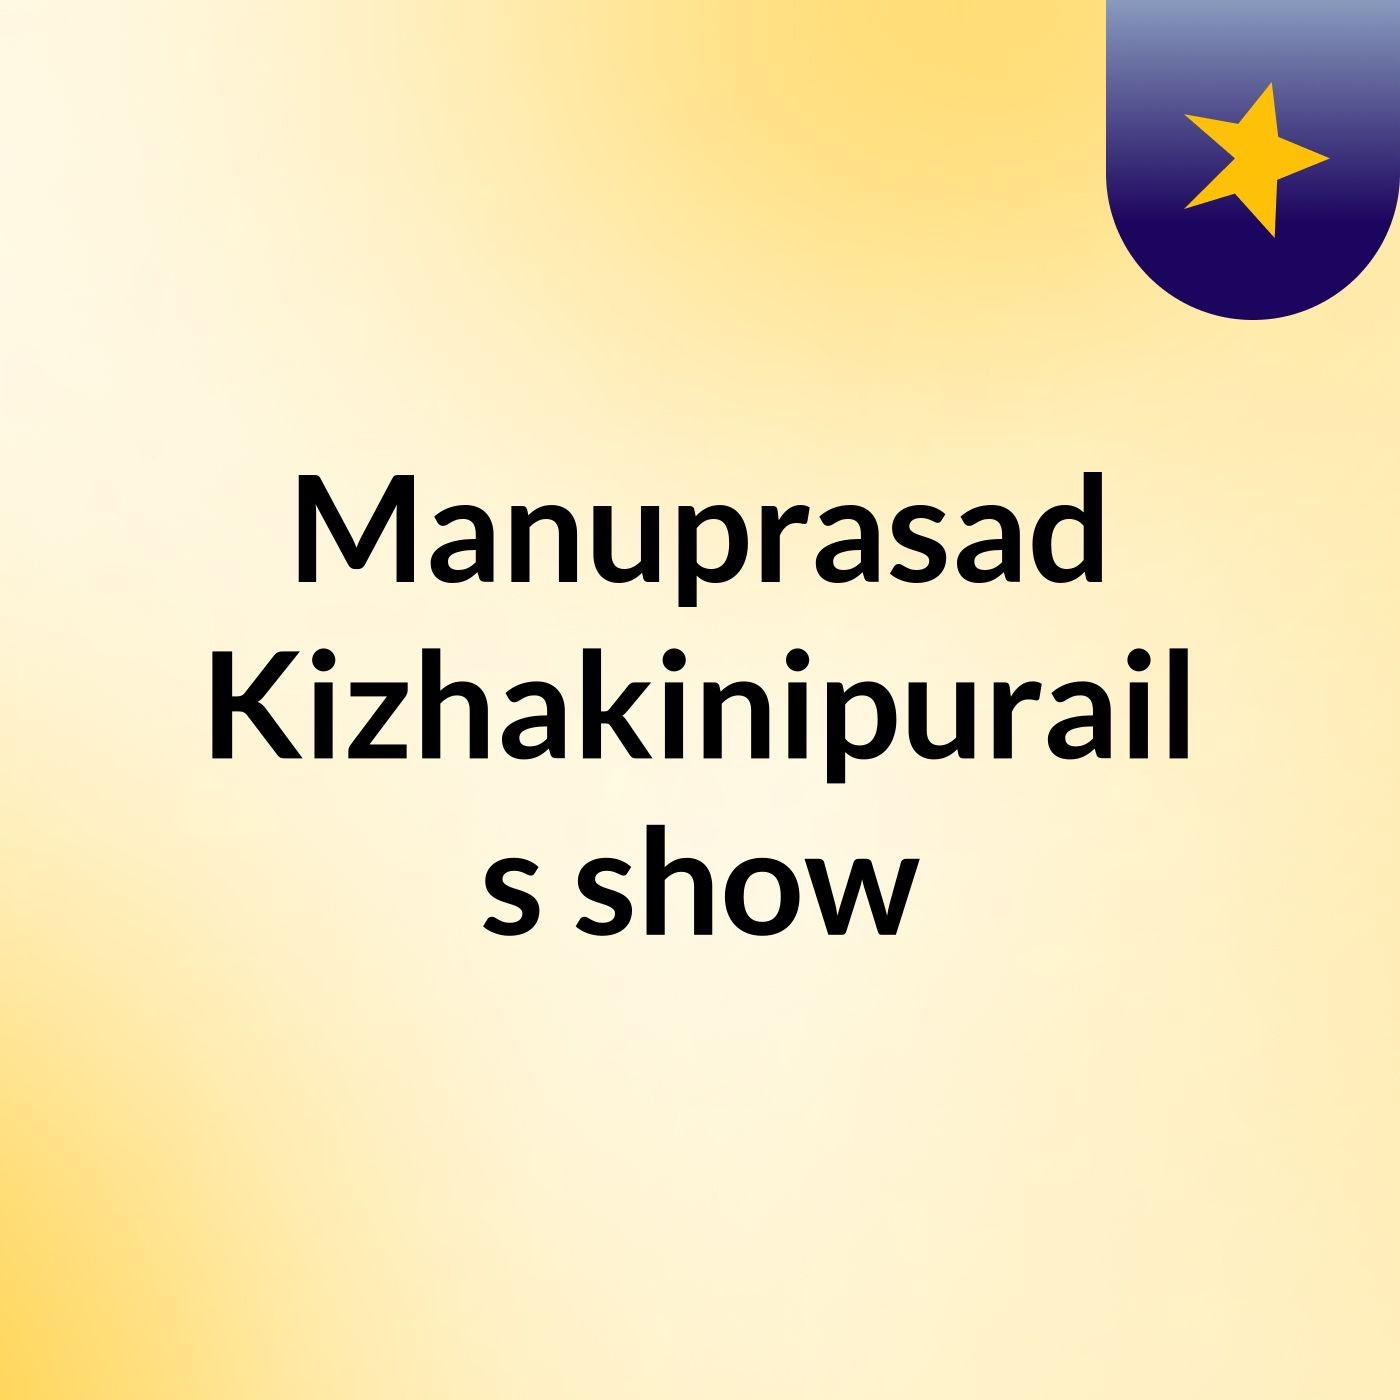 Manuprasad Kizhakinipurail's show